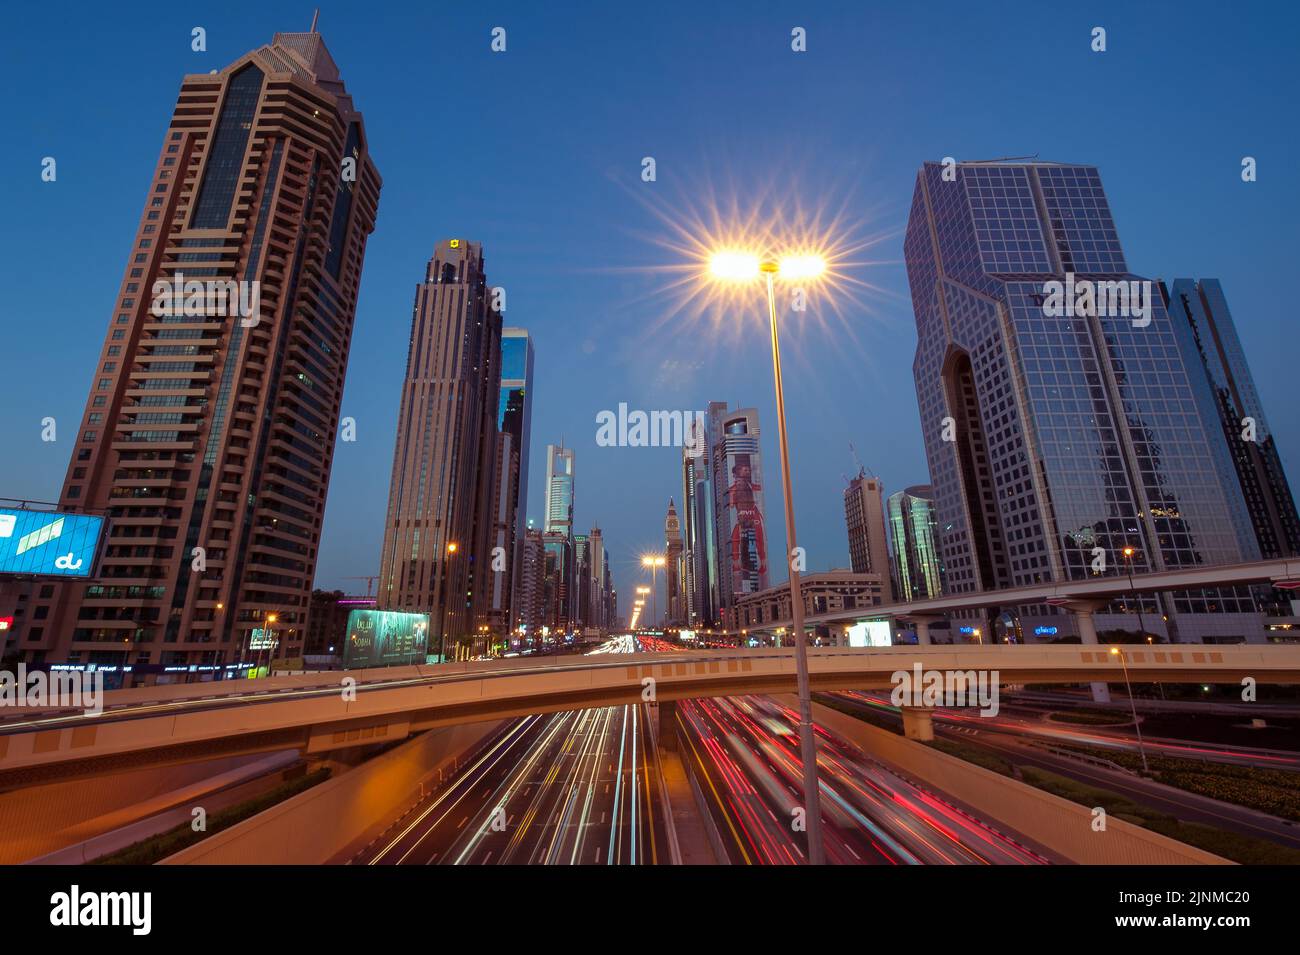 Amplia imagen del tráfico y los edificios a lo largo de Sheikh Zayed Road, la autopista más larga de Dubai y de todos los Emiratos Árabes Unidos. Paisaje urbano por la noche. Foto de stock